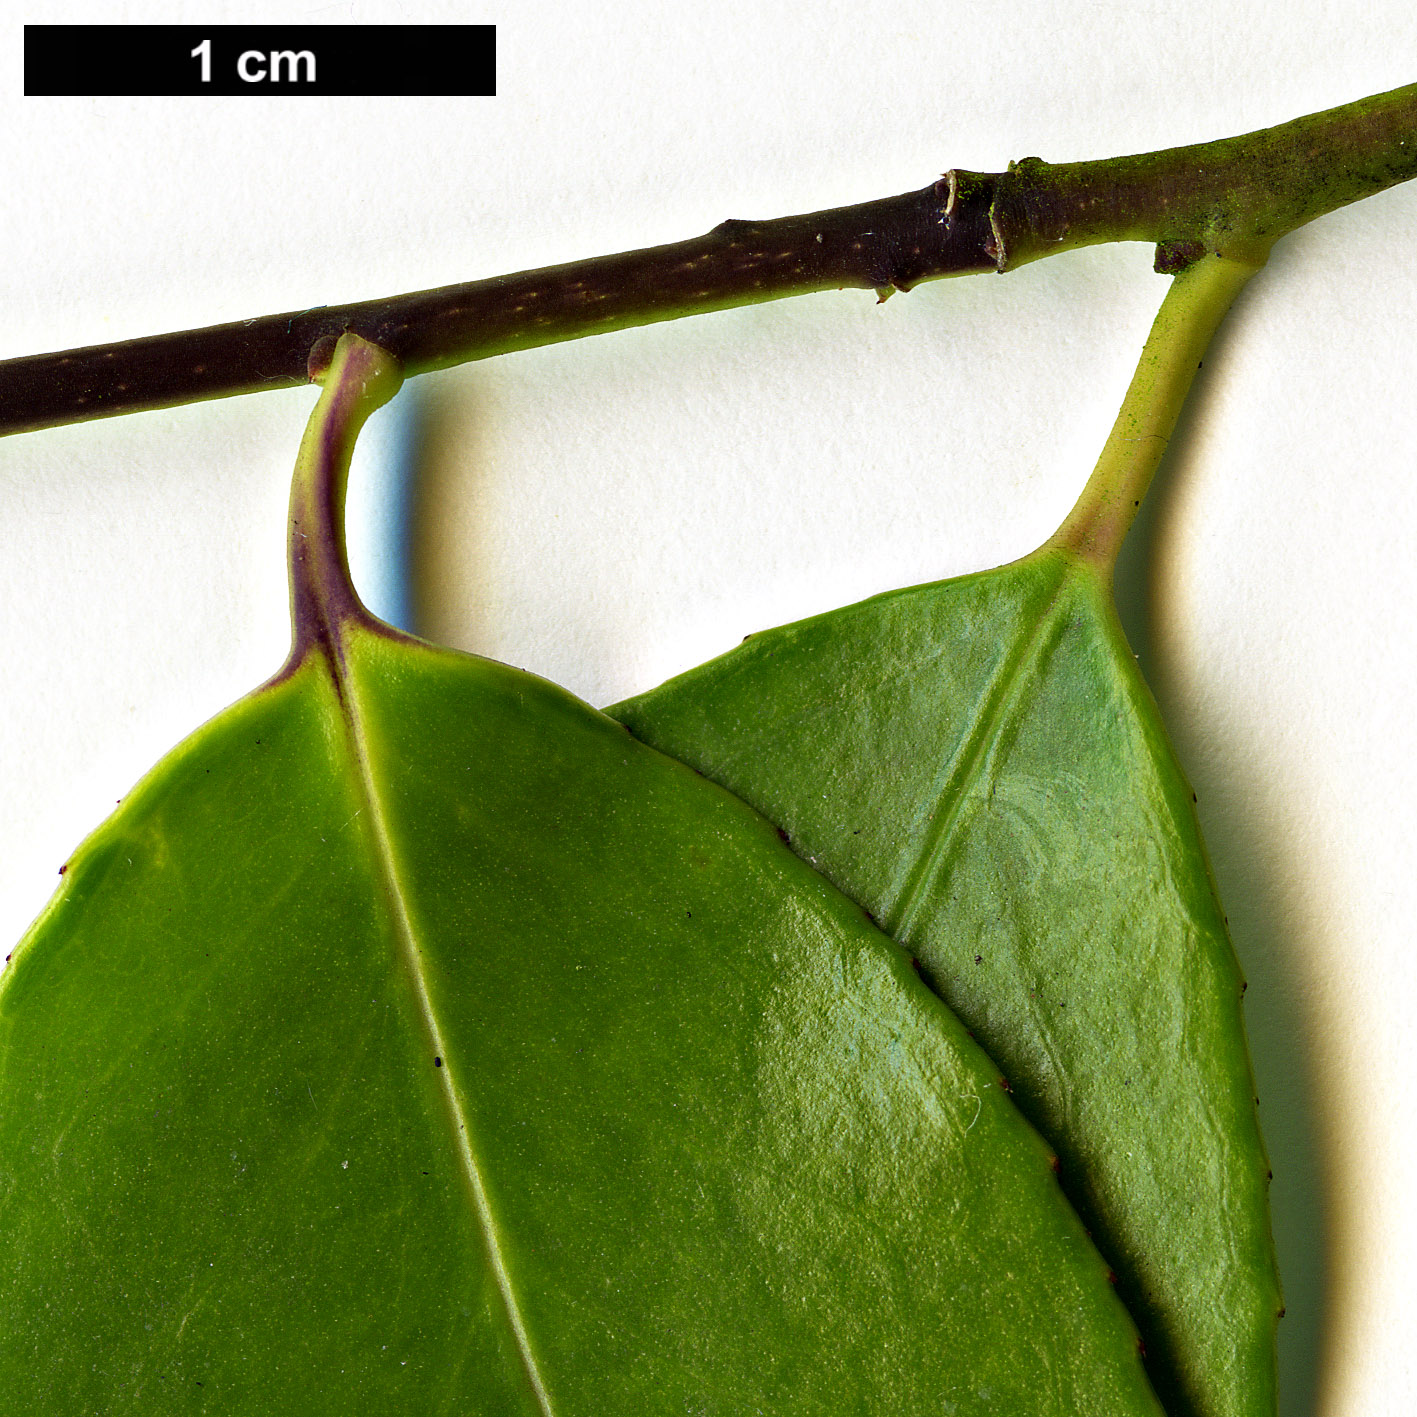 High resolution image: Family: Aquifoliaceae - Genus: Ilex - Taxon: brachyphylla